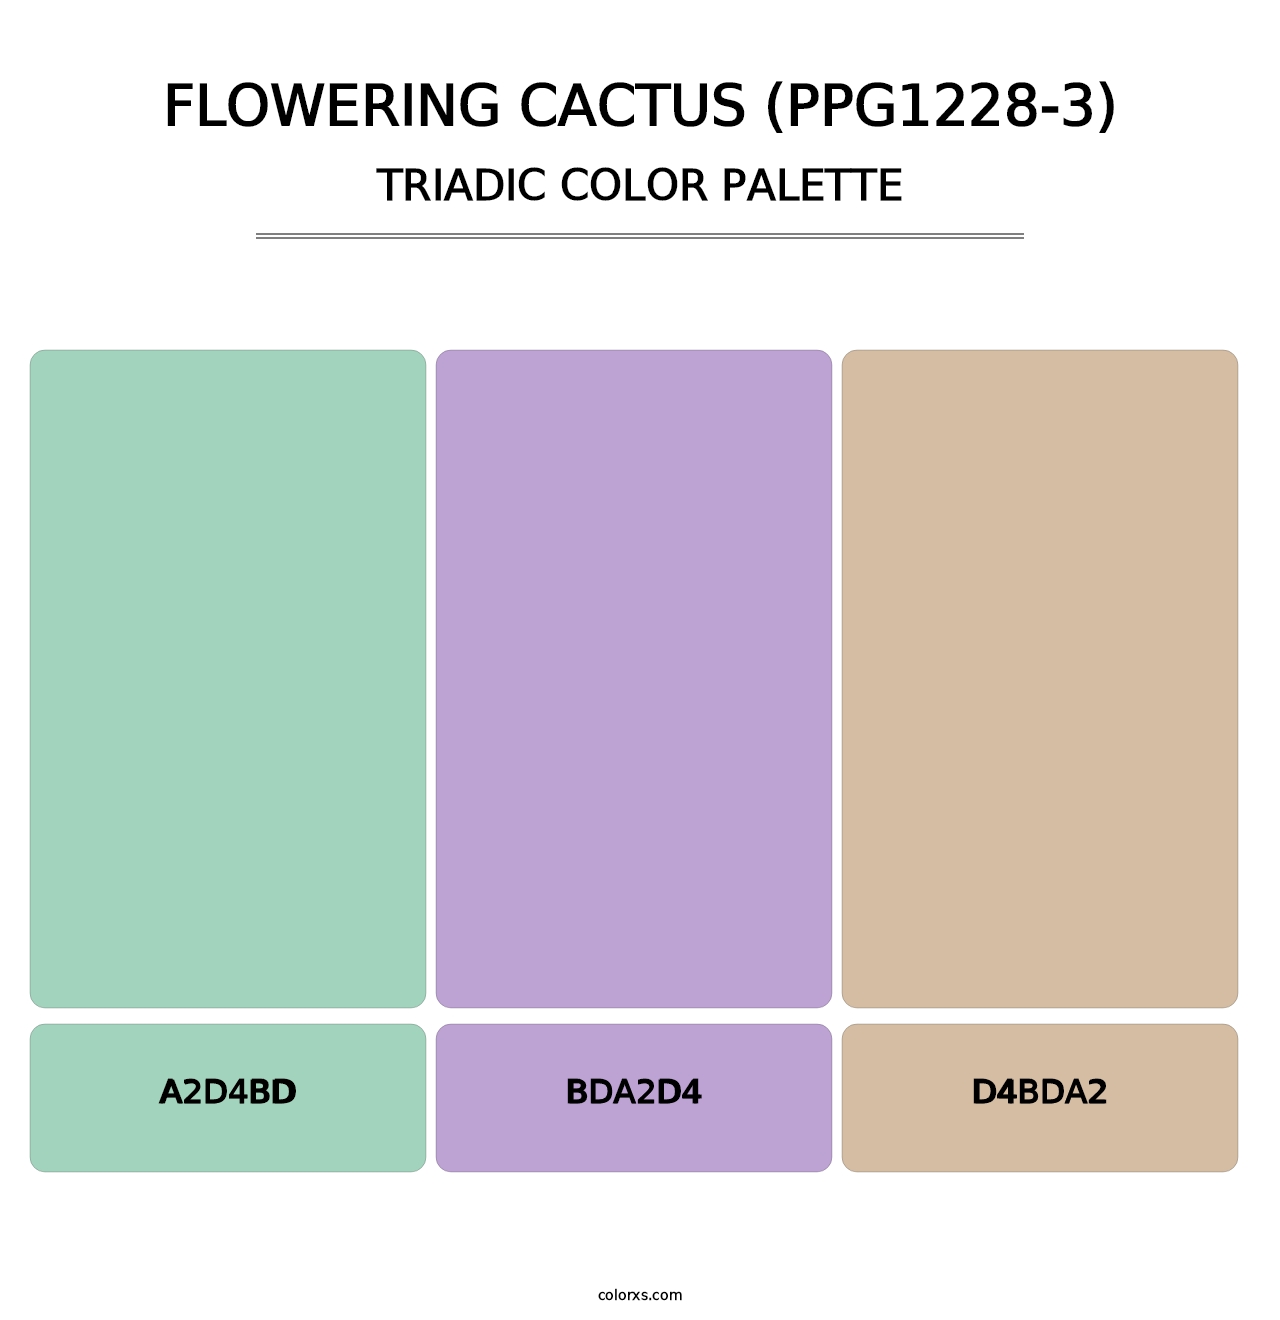 Flowering Cactus (PPG1228-3) - Triadic Color Palette